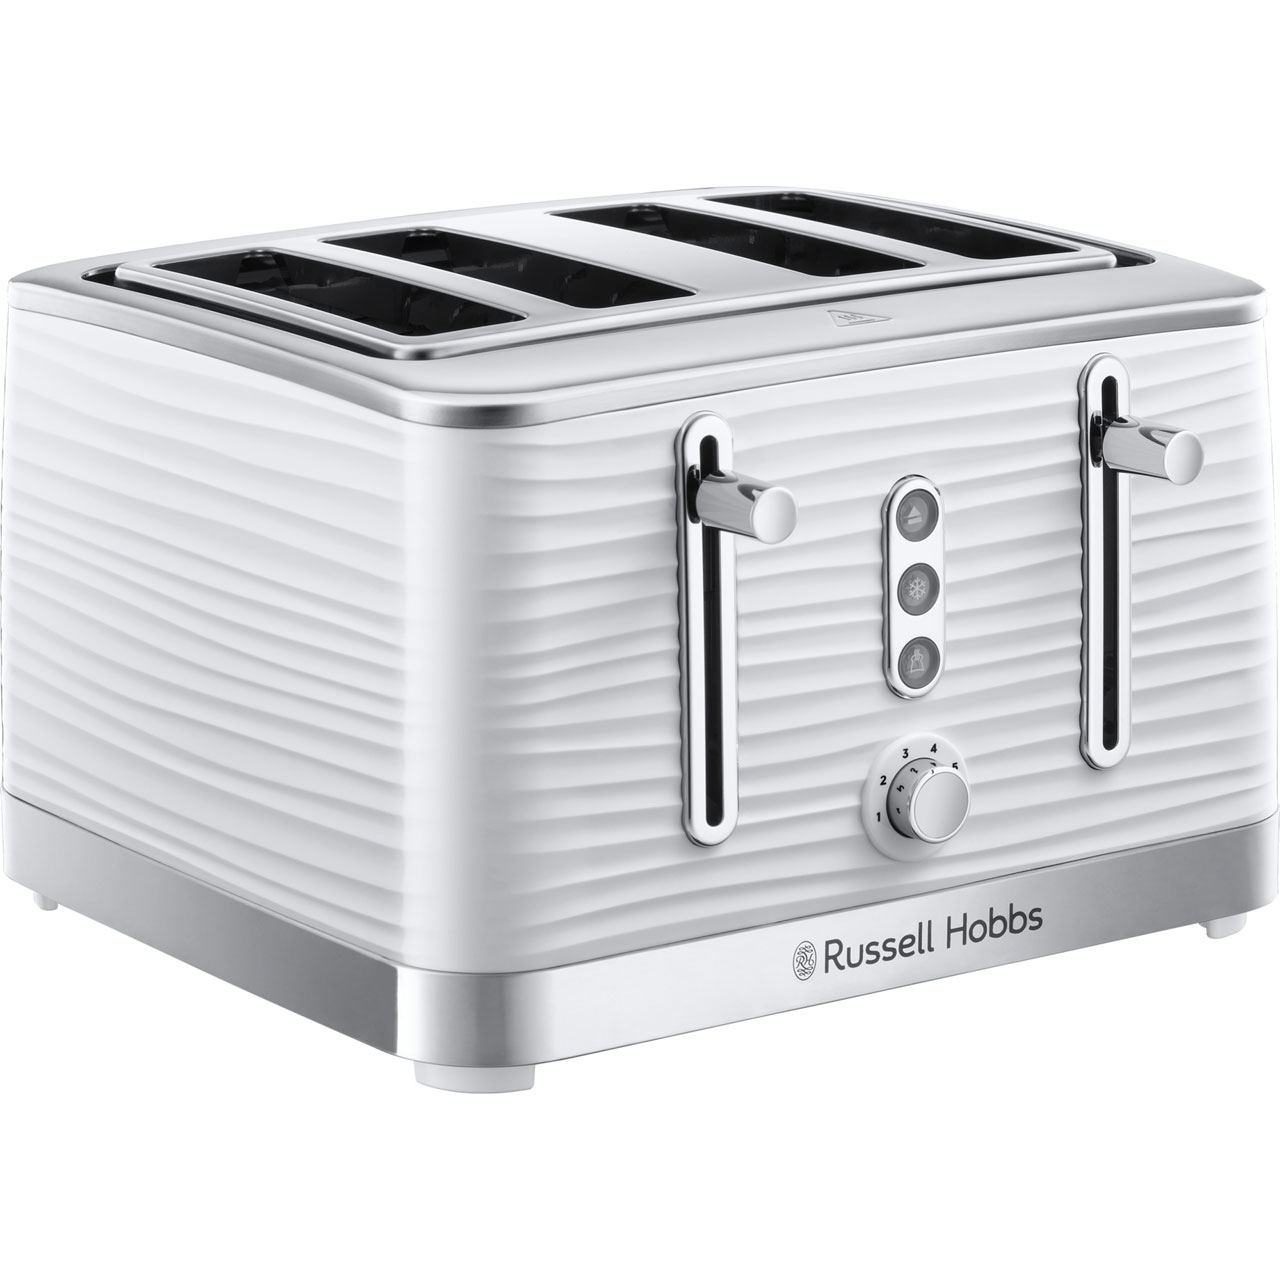 Russell Hobbs Inspire 24380 4 Slice Toaster - White White